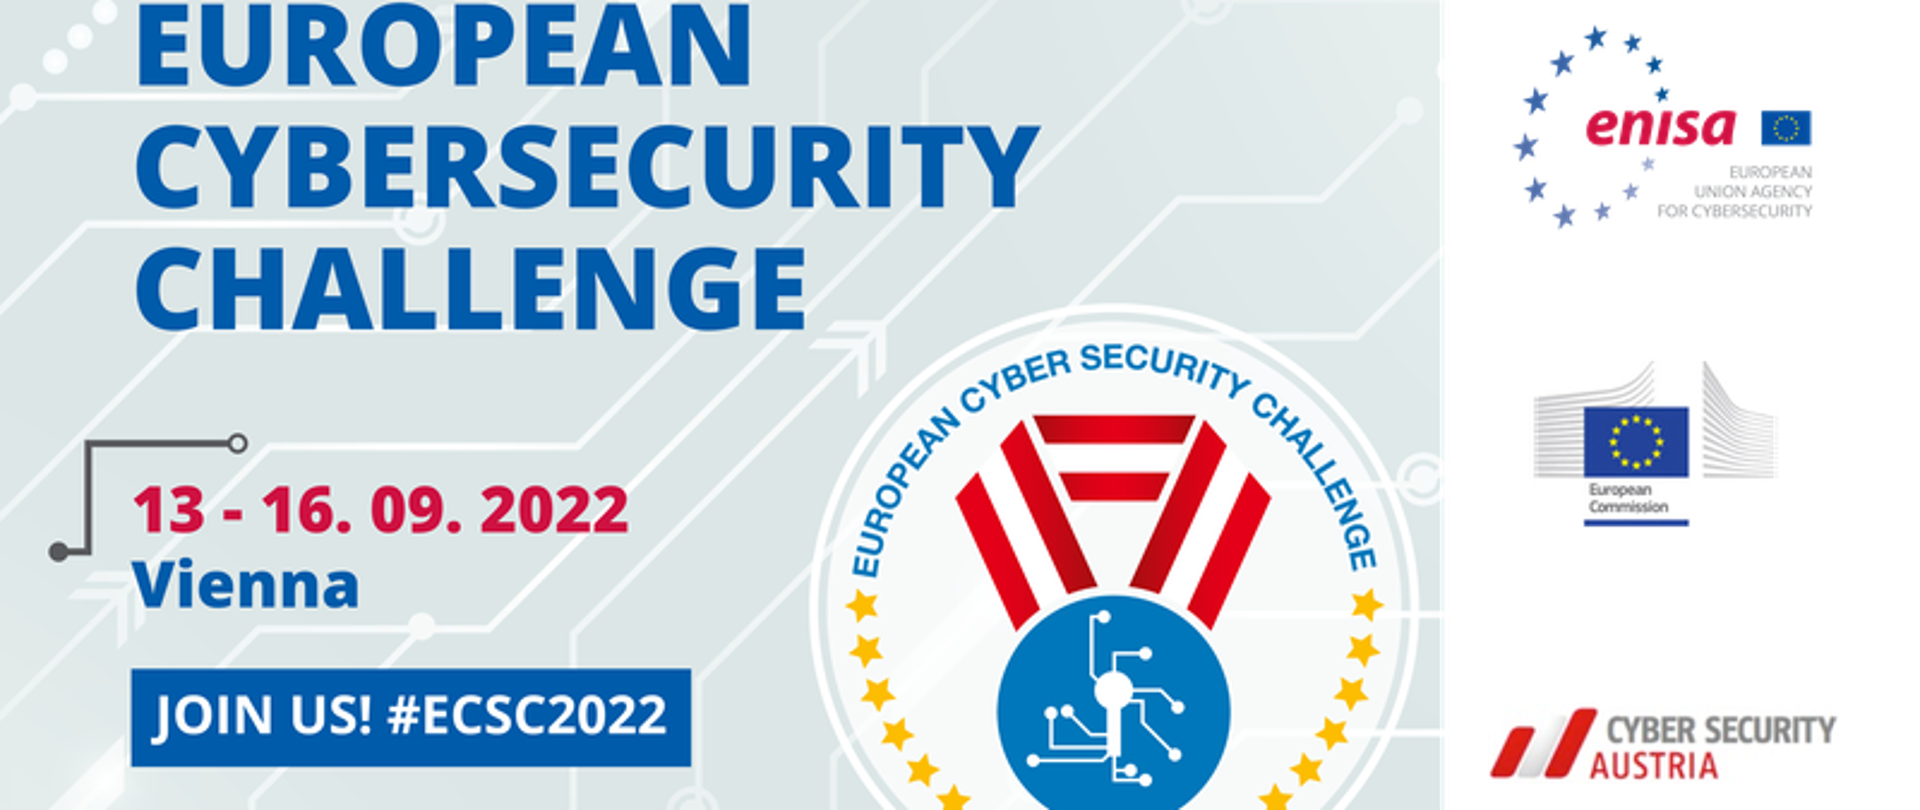 Plakat europejskich zawodów cyberbezpieczeństwa. Na górze niebieski napis European Cyber Security Challenge ,poniżej czerwona data 13-16.09.2022 Vienna